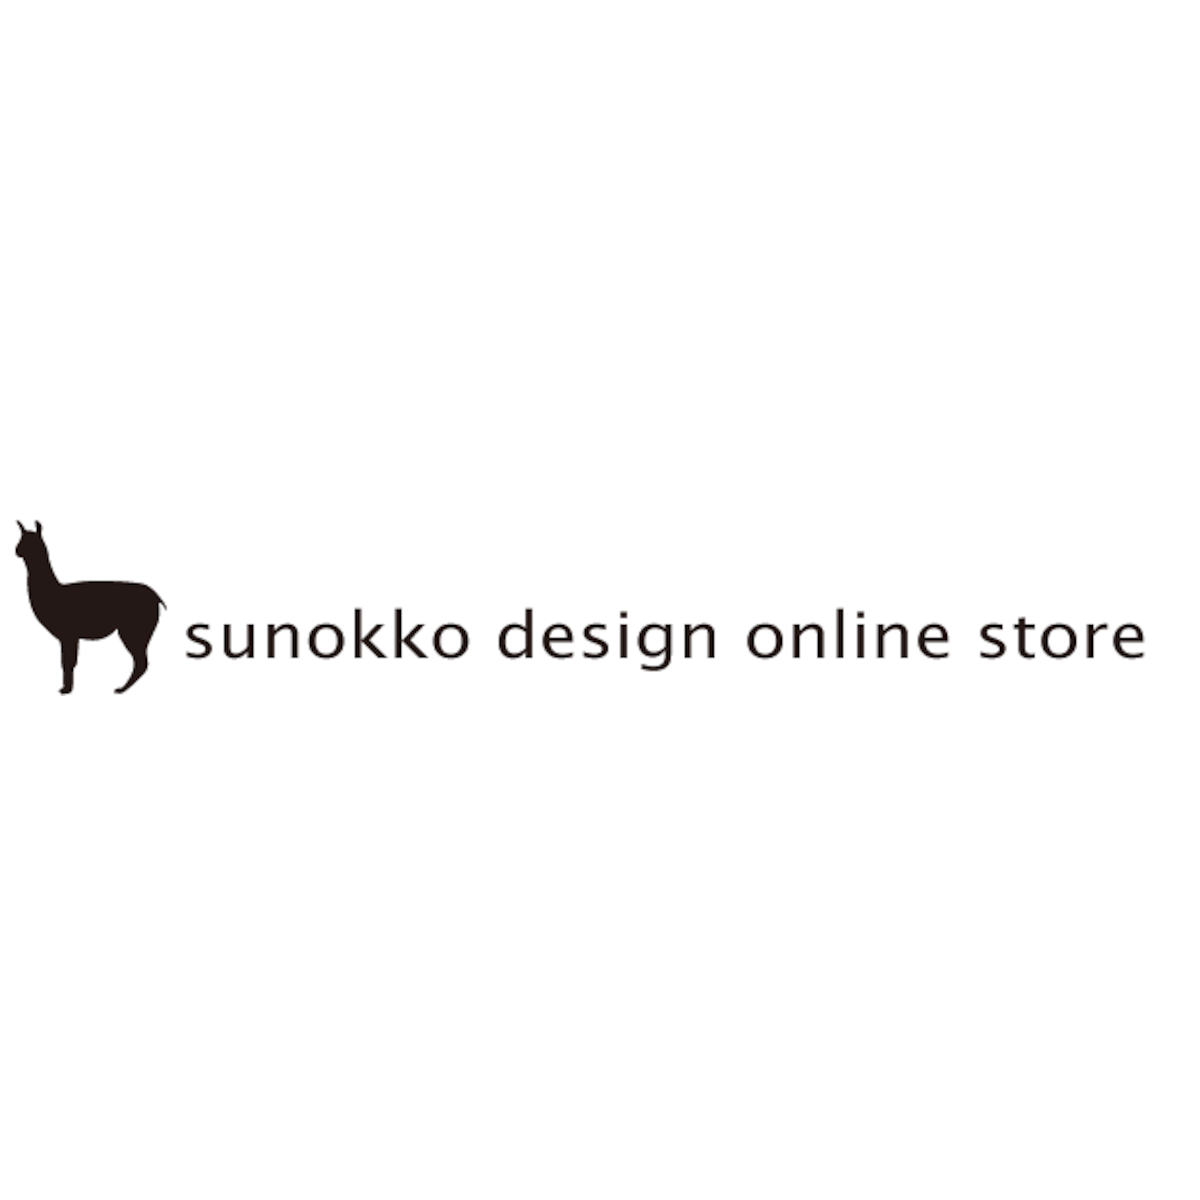 アルパカ雑貨sunokko design online store